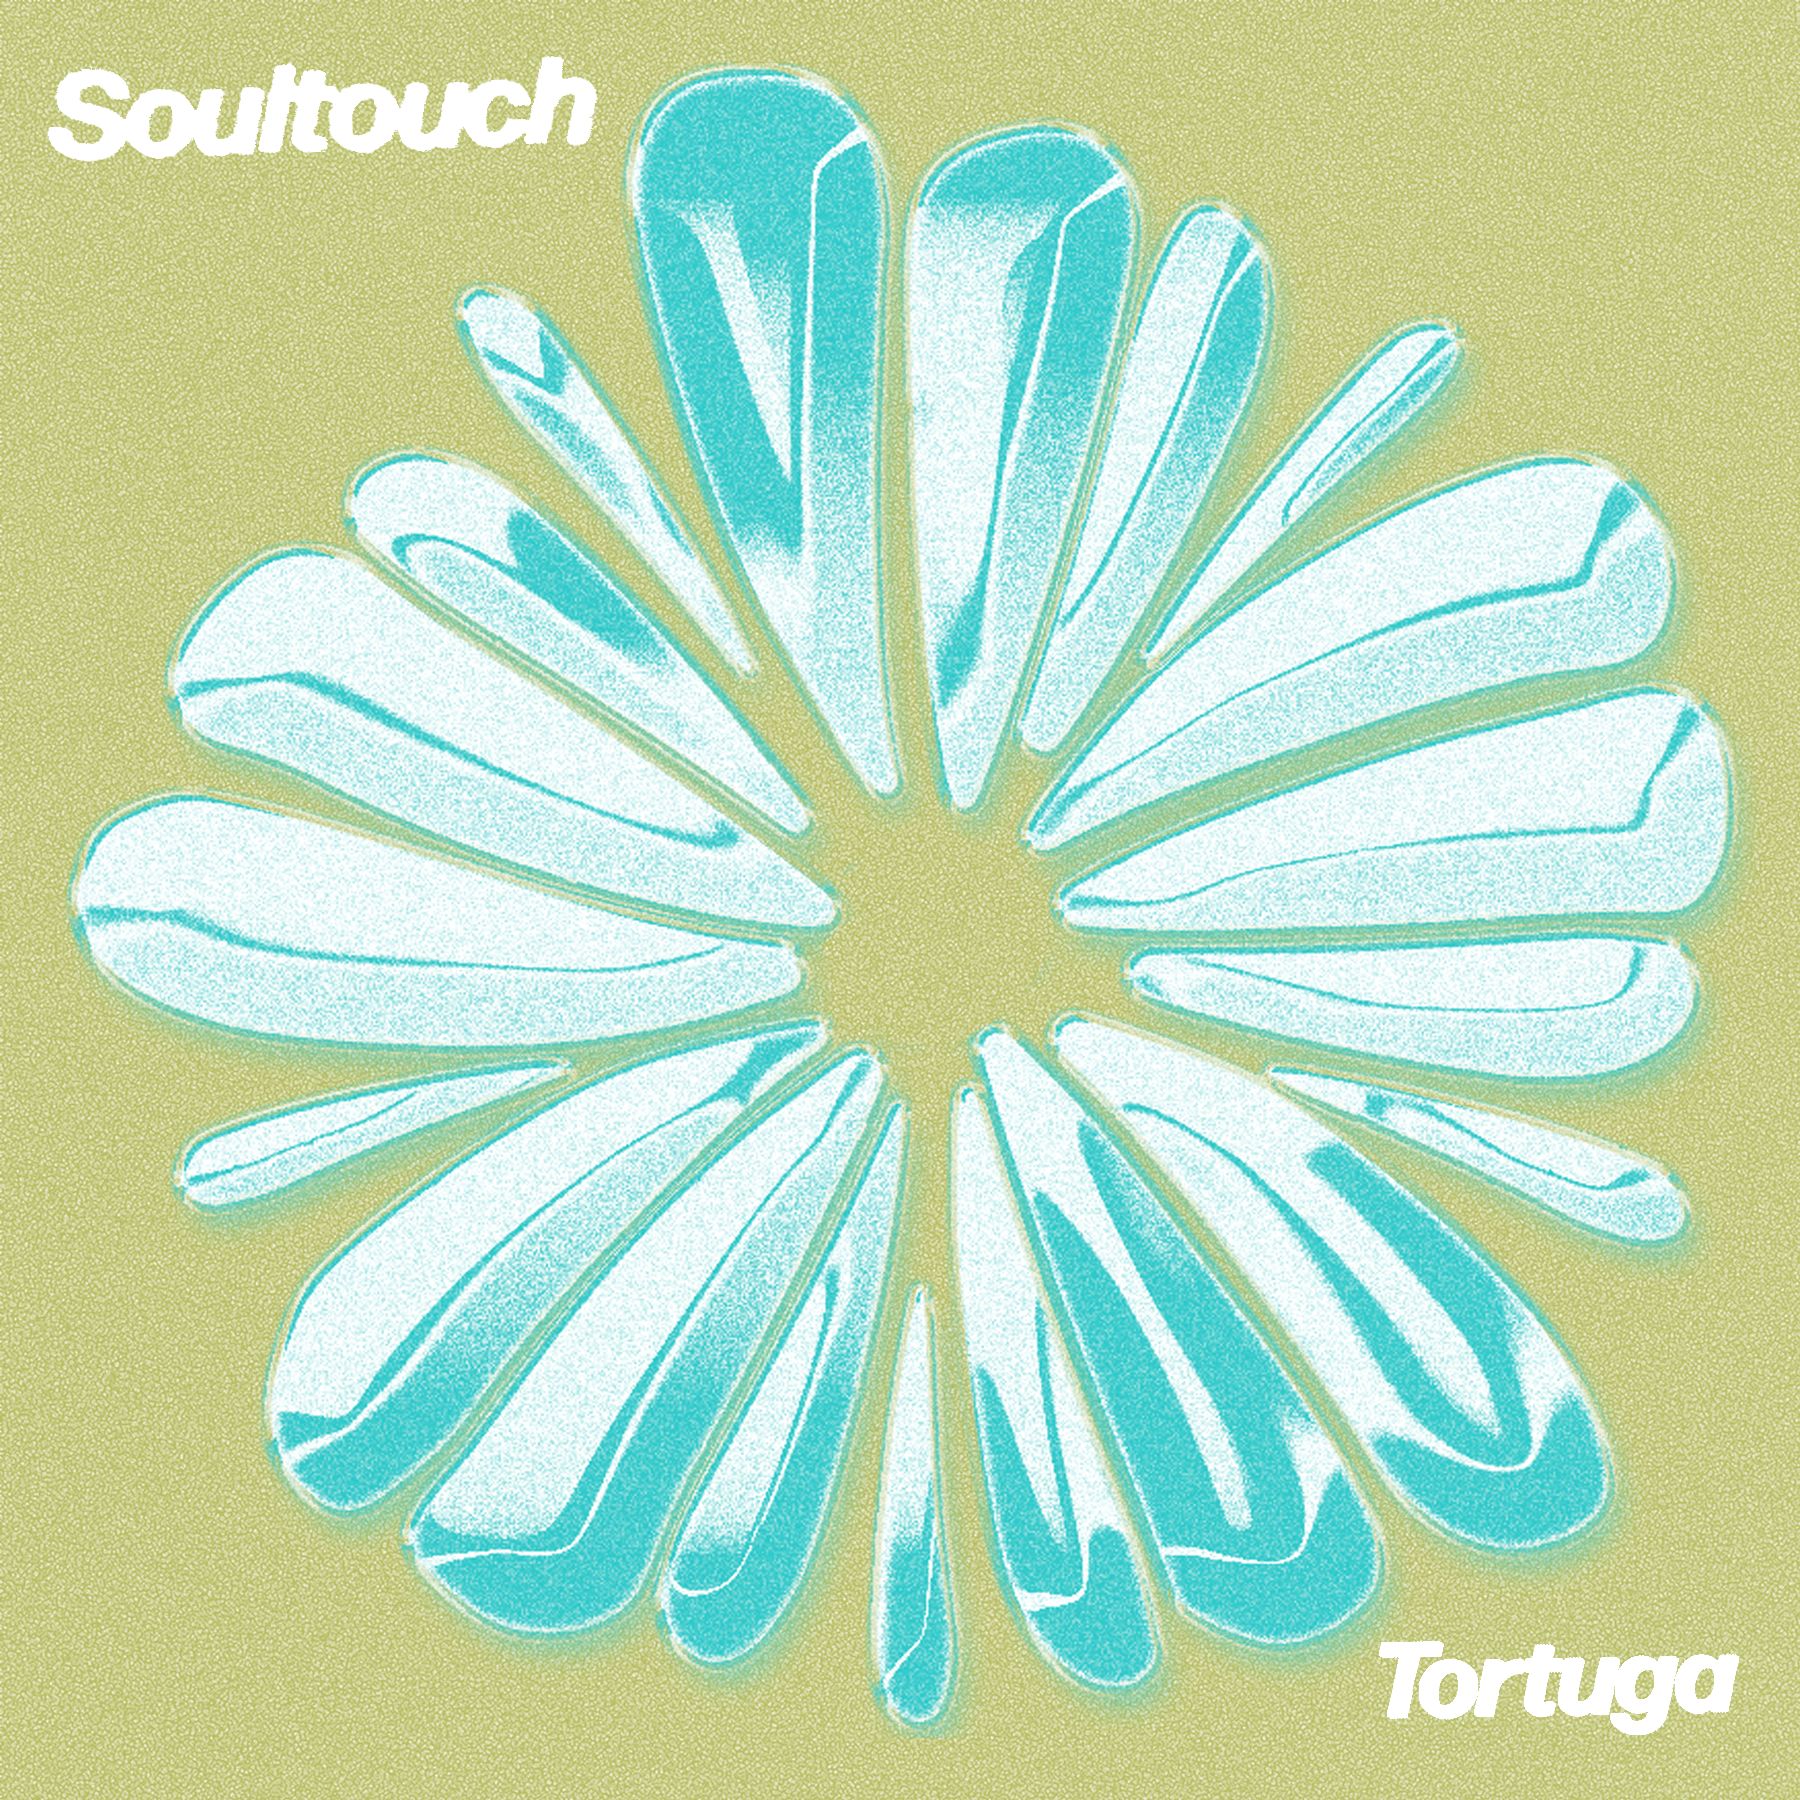 Télécharger PREMIERE : Tortuga - Soultouch